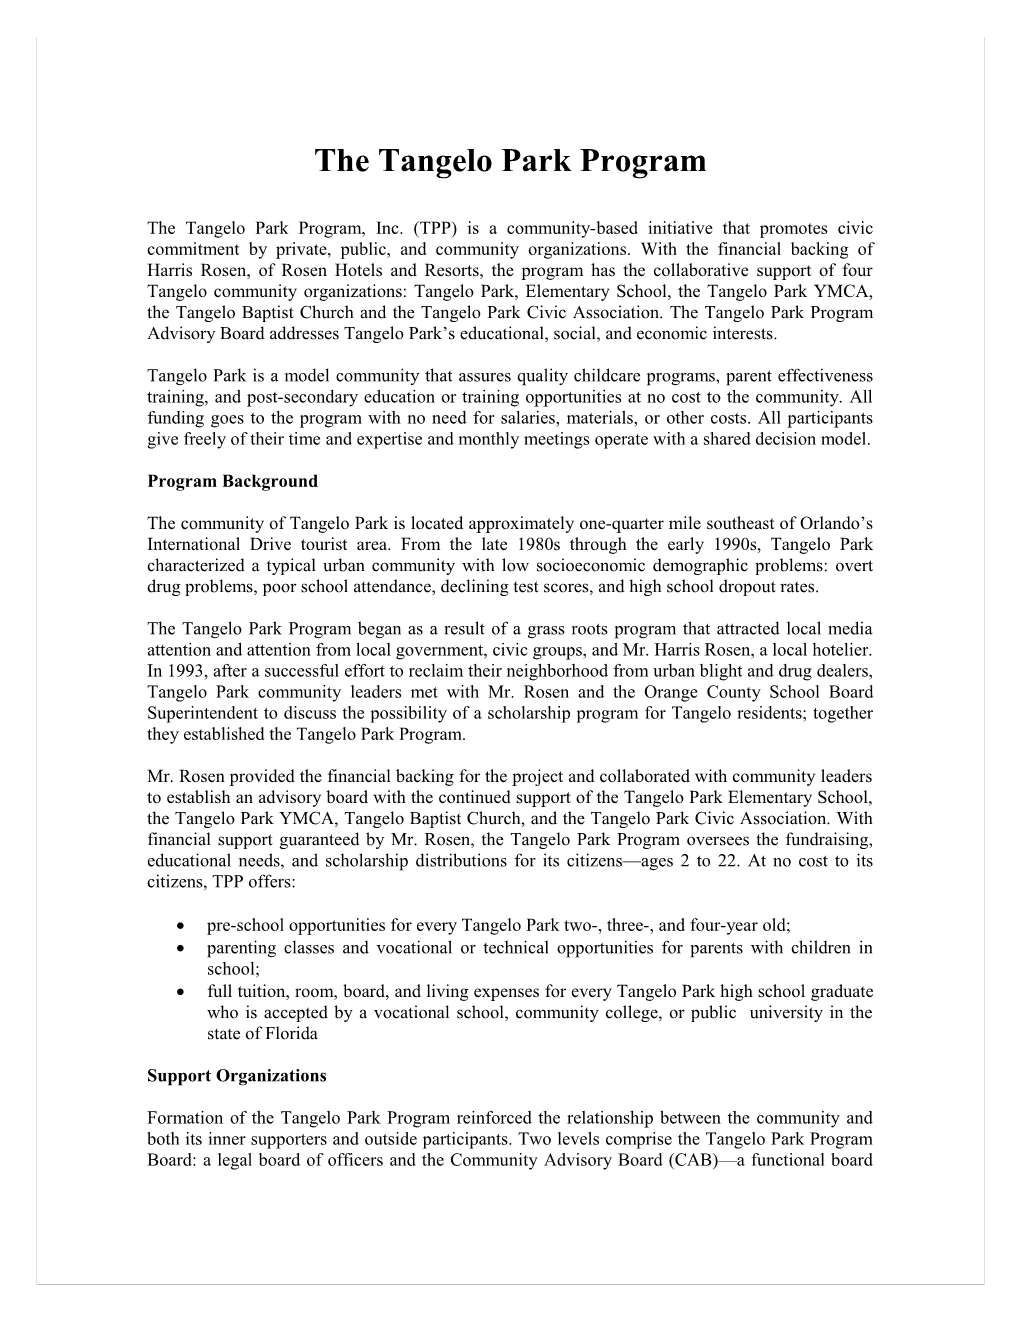 Tangelo Park Achievements